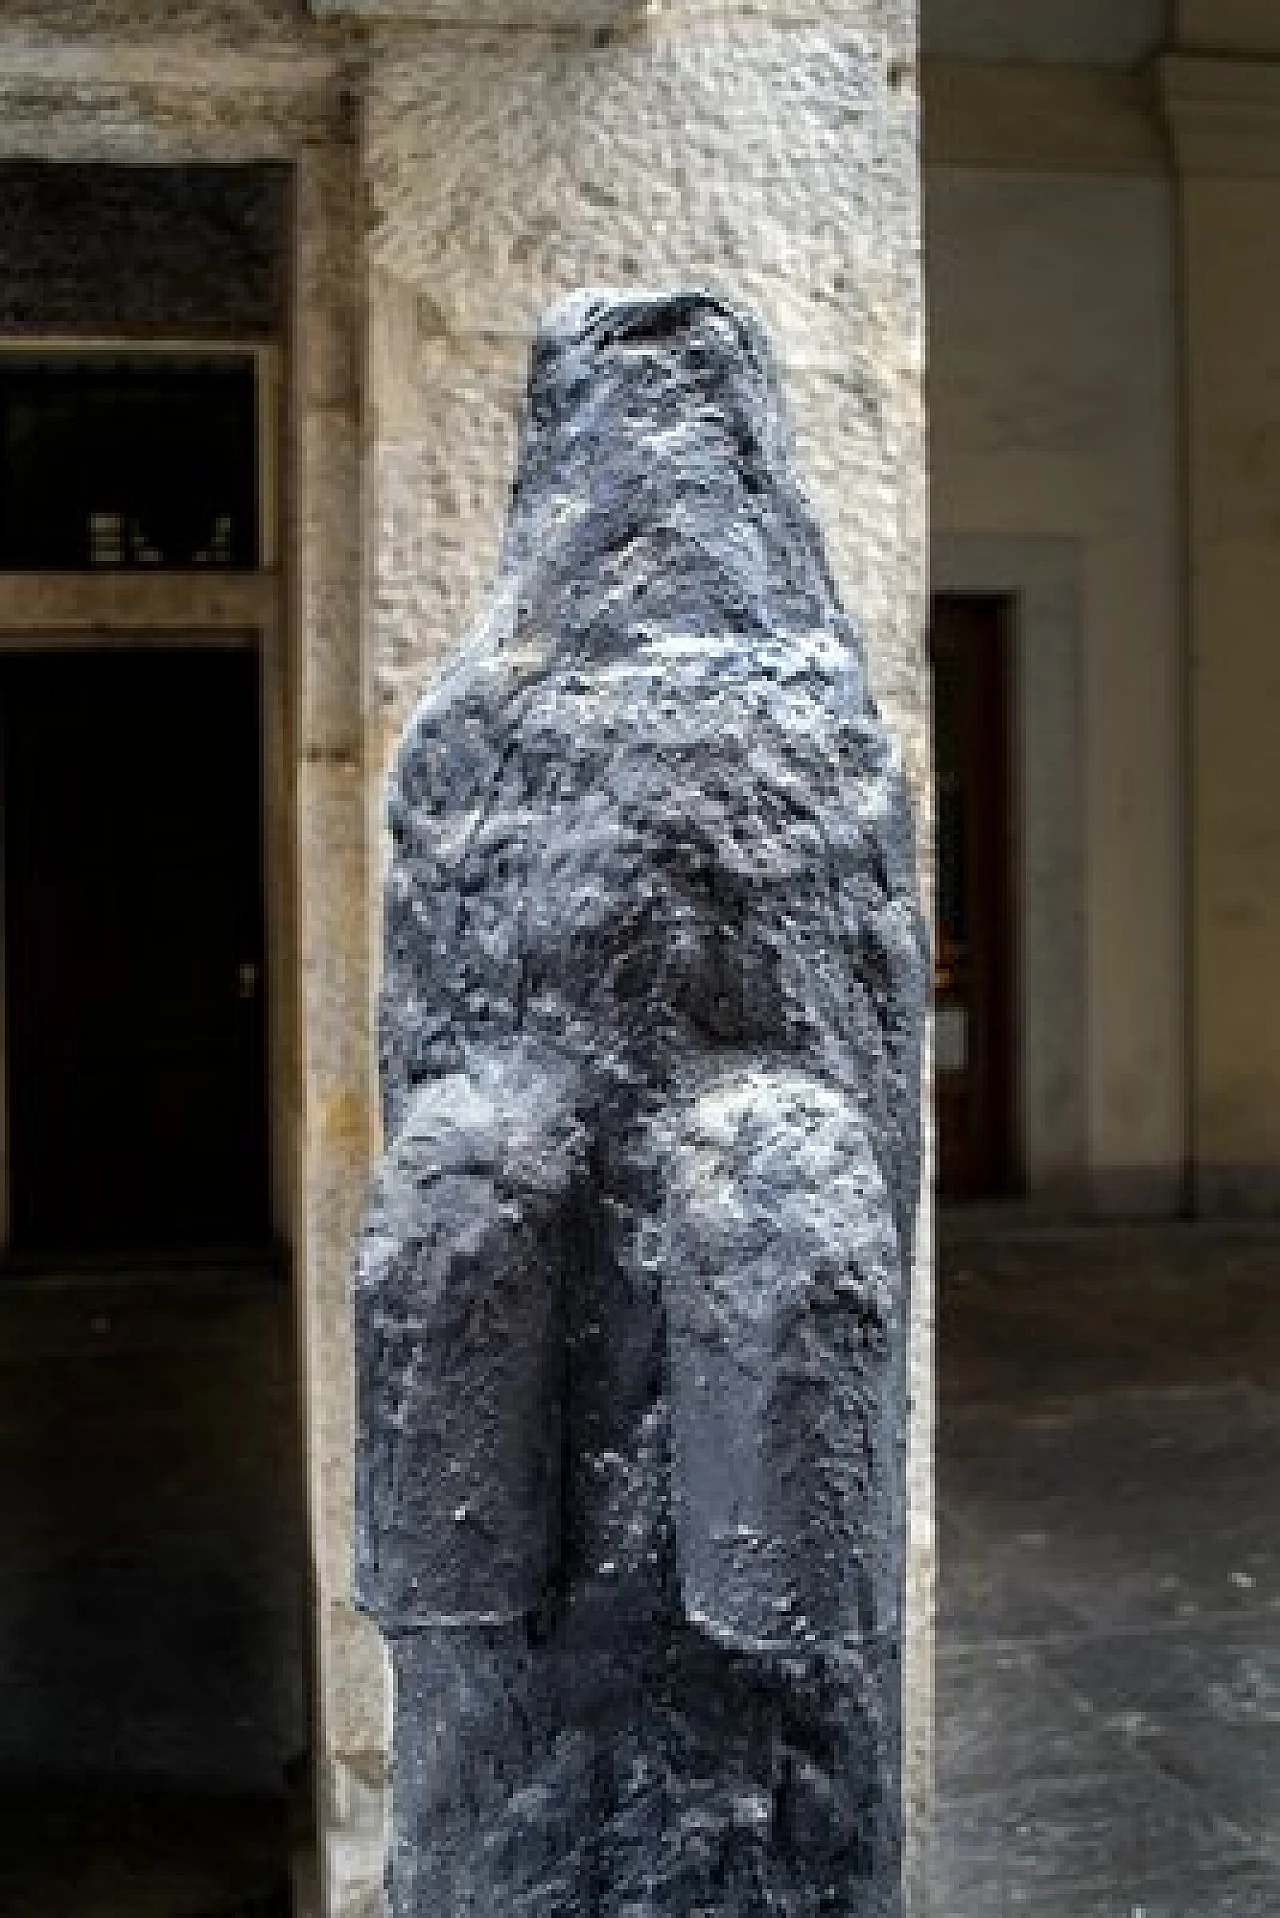 Sergio Ragalzi, Ombre Atomiche, concrete and tar sculptures, 1985 4